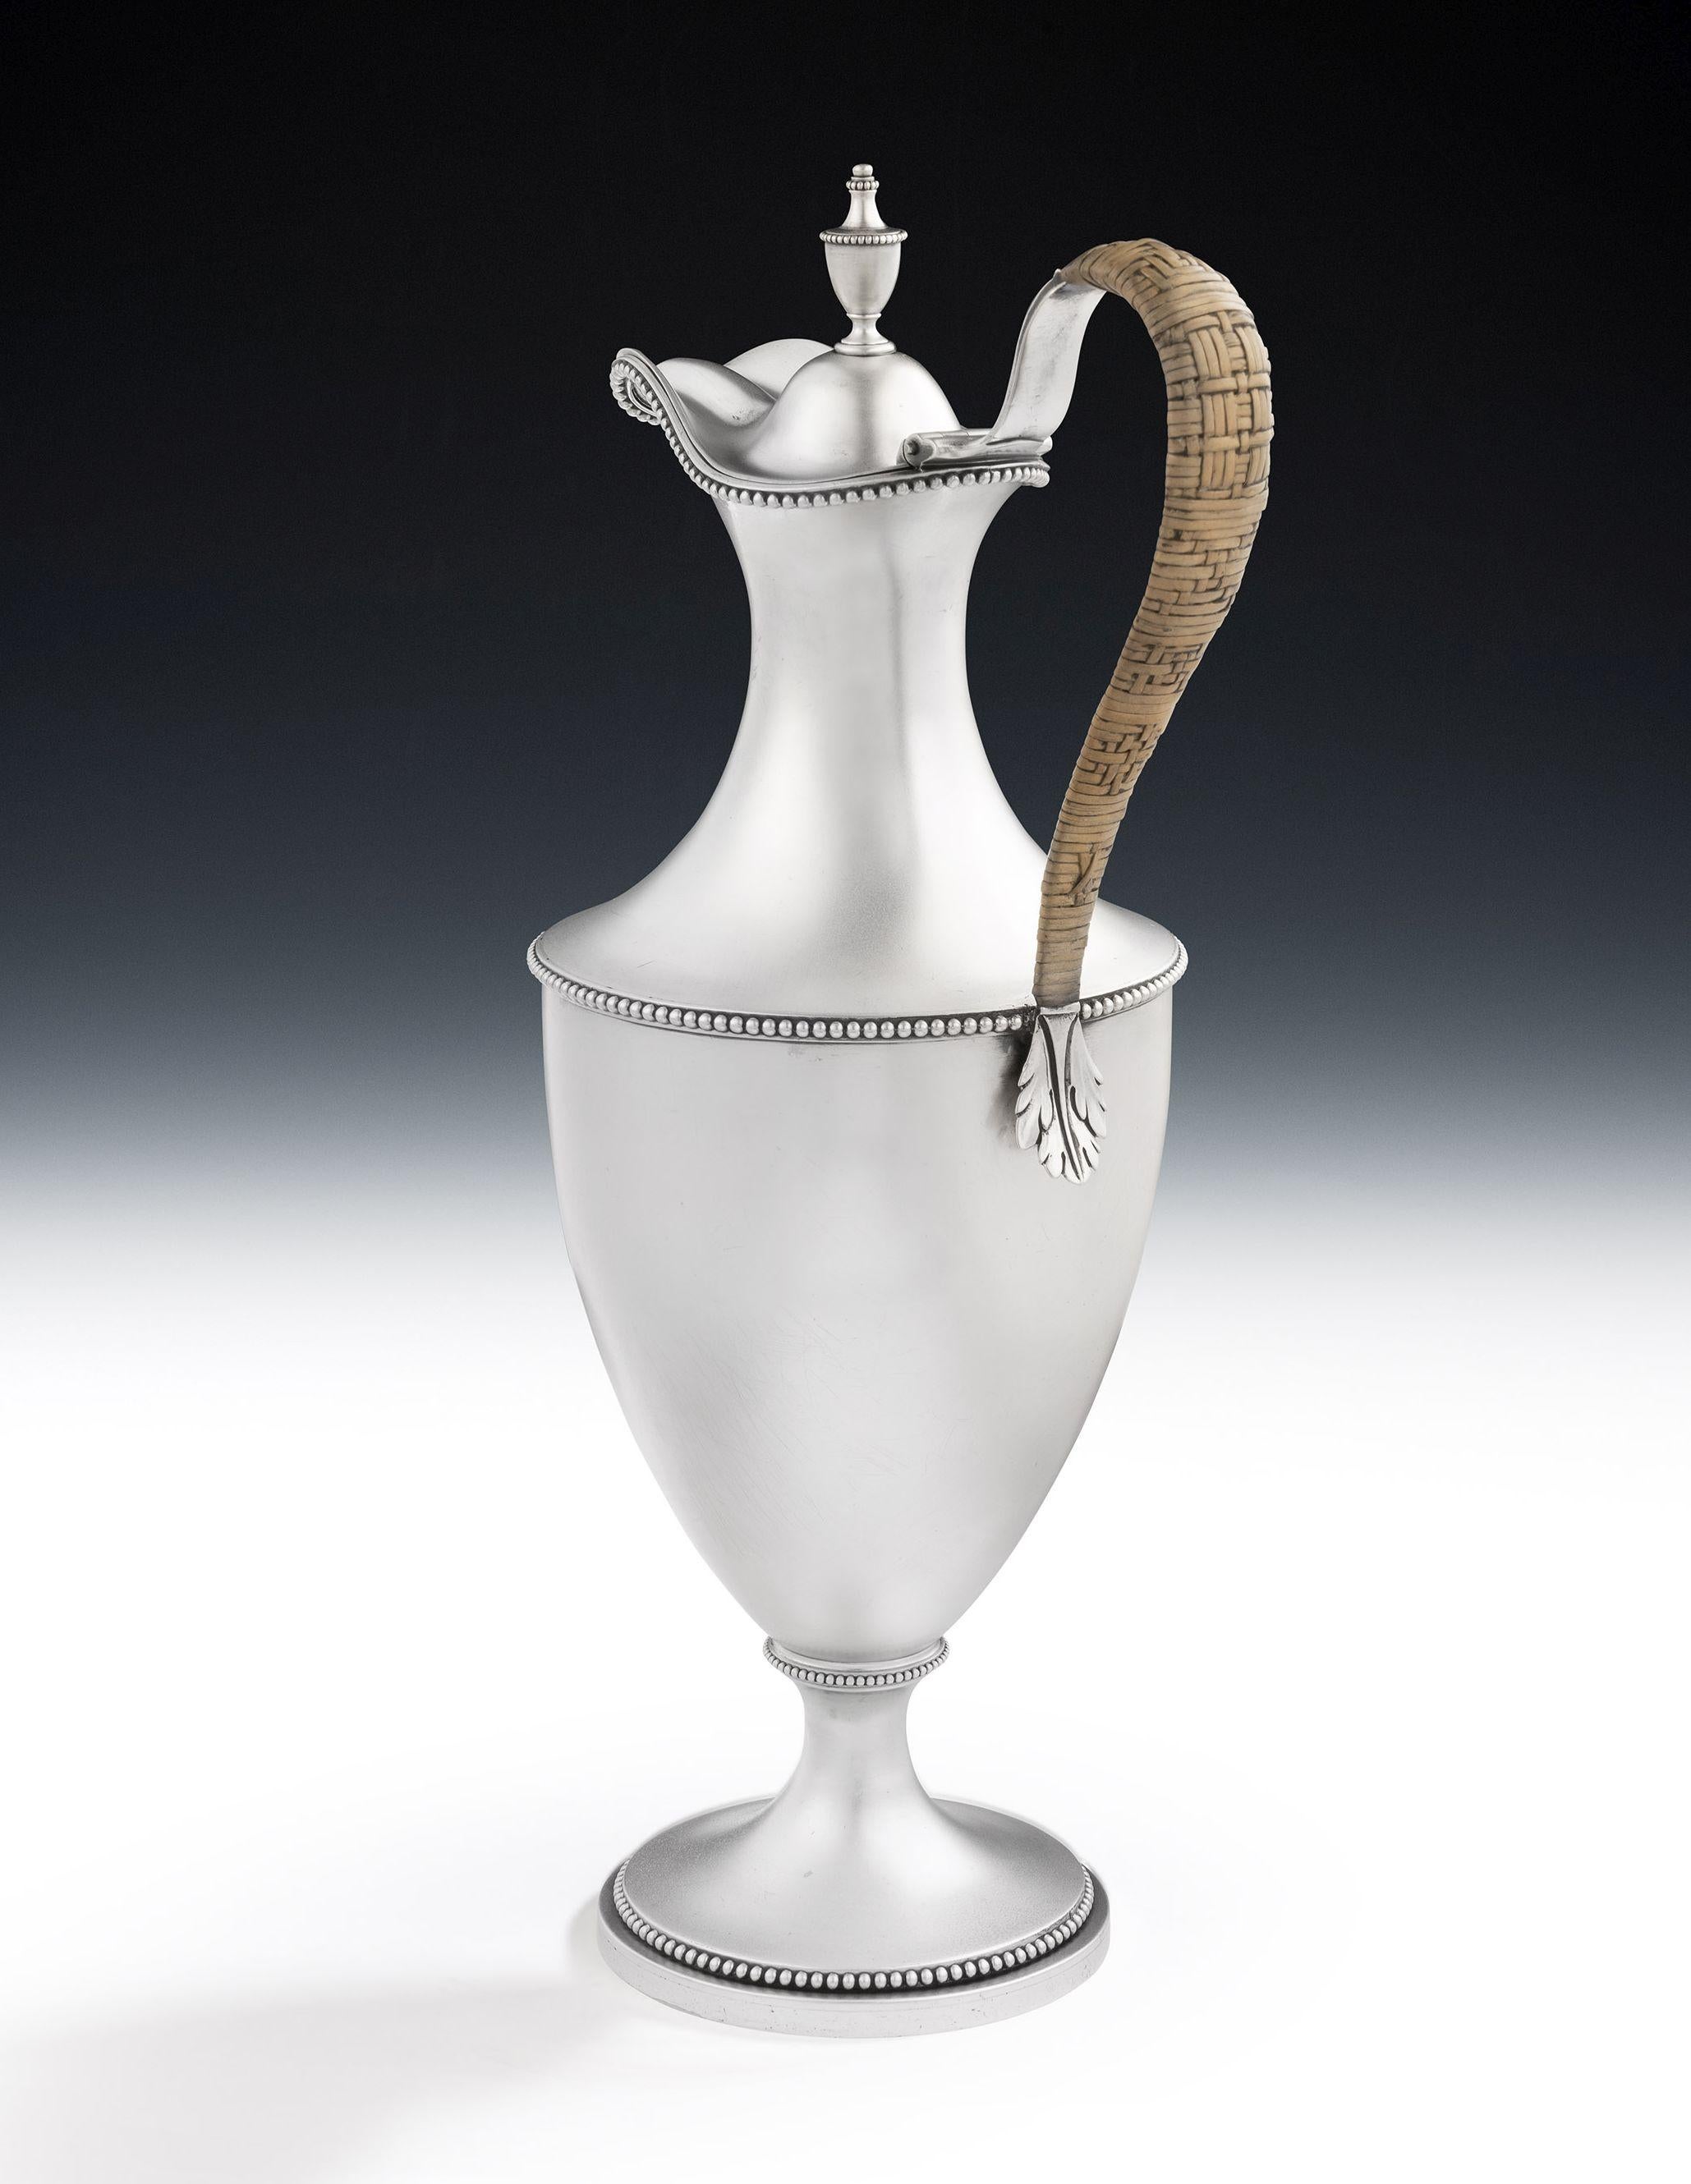 Eine sehr schöne Wasser-/Weinkanne von George III, hergestellt 1778 in London von Makepeace & Carter

Die Kanne hat eine neoklassische Form und steht auf einem gewölbten Rundfuß.  Der Hauptkörper ist vasenförmig und mit verschiedenen Perlenbändern